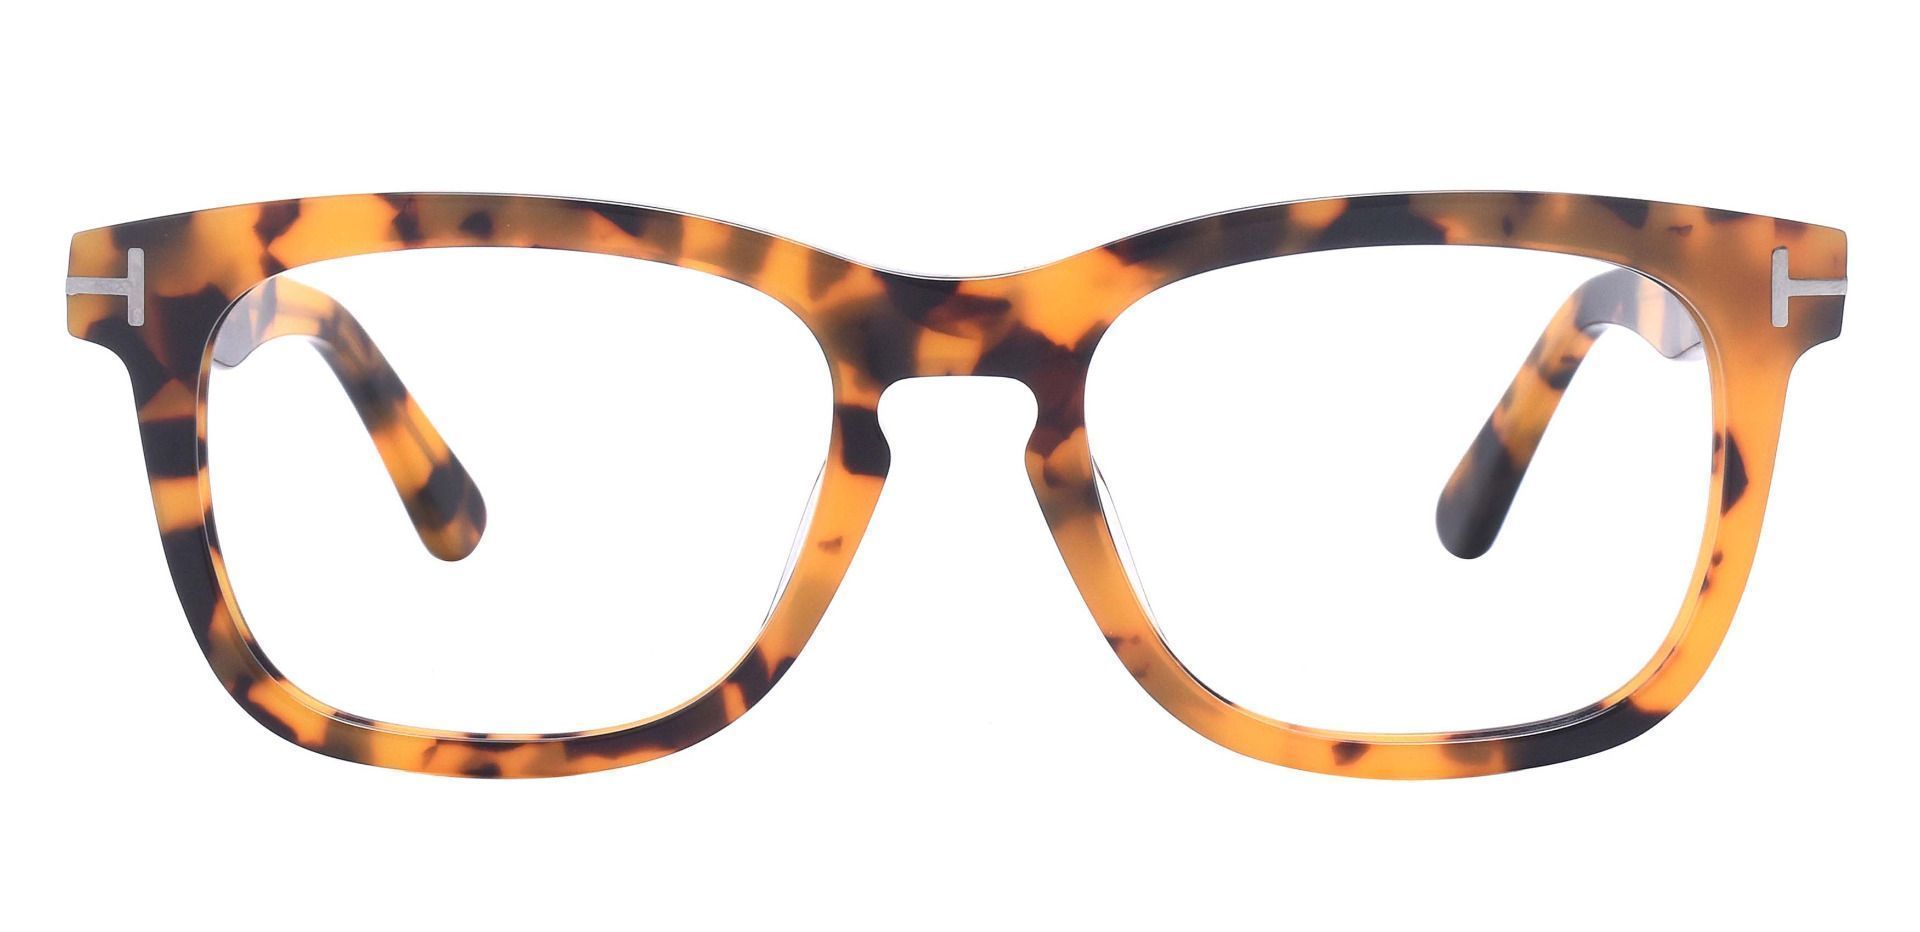 Heritage Square Prescription Glasses - Tortoise | Women's Eyeglasses ...